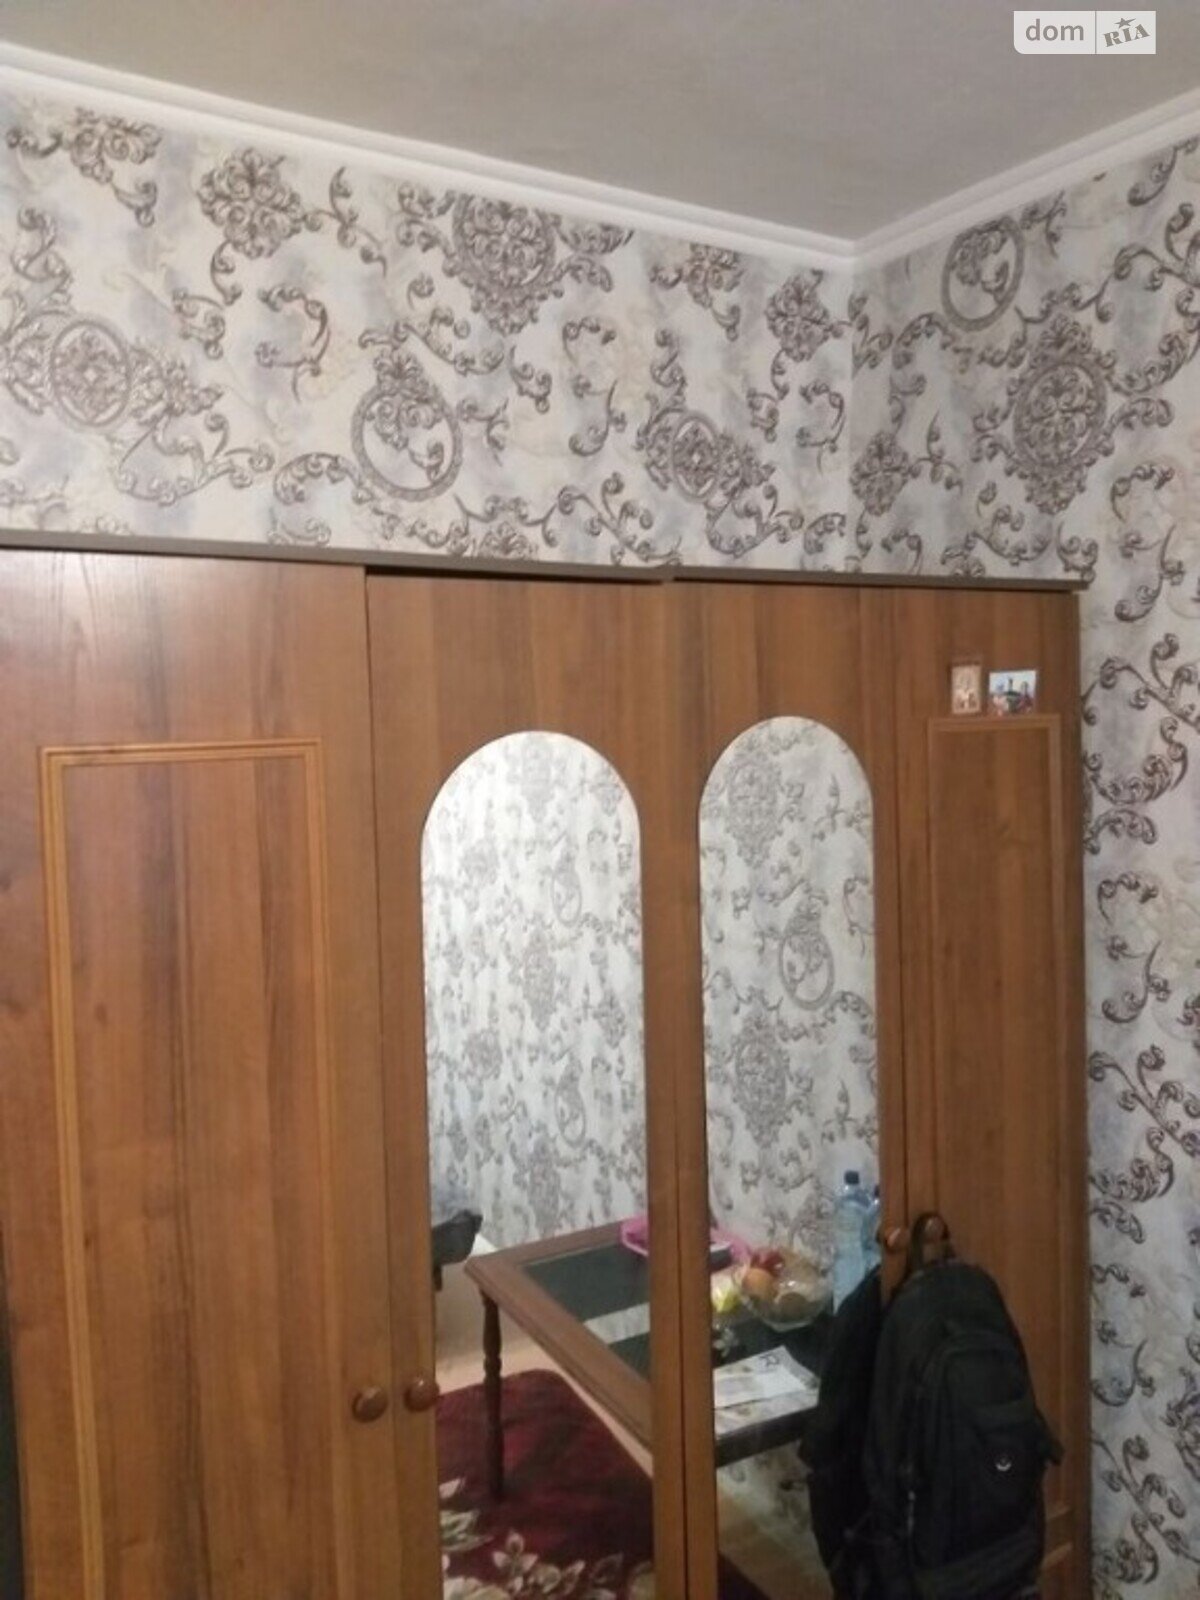 Комната в Одессе, на ул. Академика Филатова в районе Черемушки на продажу фото 1